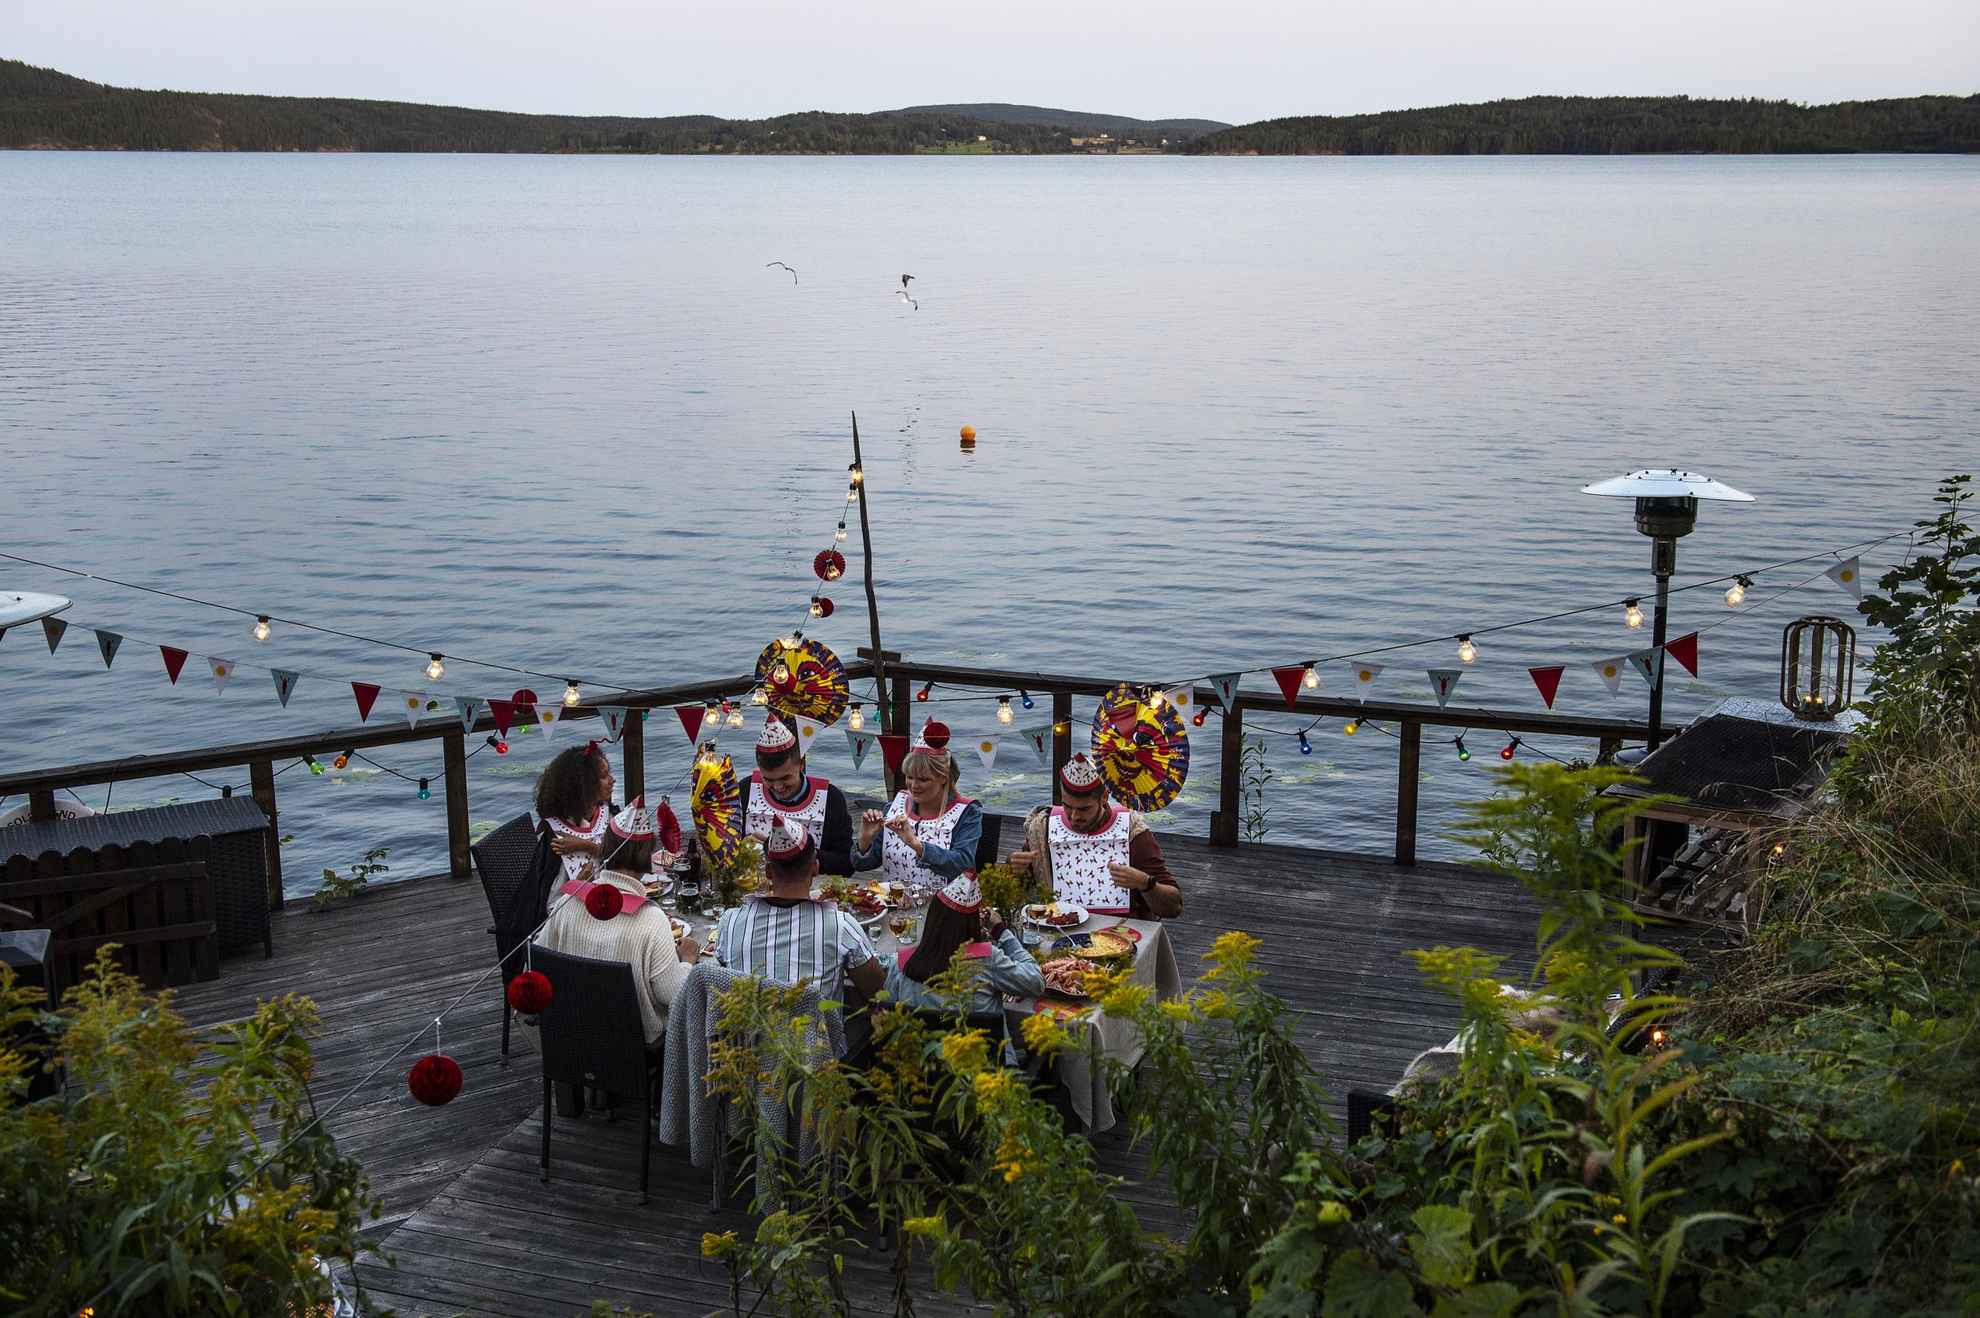 Rivierkreeftenfeestje op een steiger aan zee. Zeven mensen rond een tafel gekleed in papieren hoeden en slabbetjes eten rivierkreeft. Boven de tafel hangen papieren lantaarns, lampjes en versieringen.